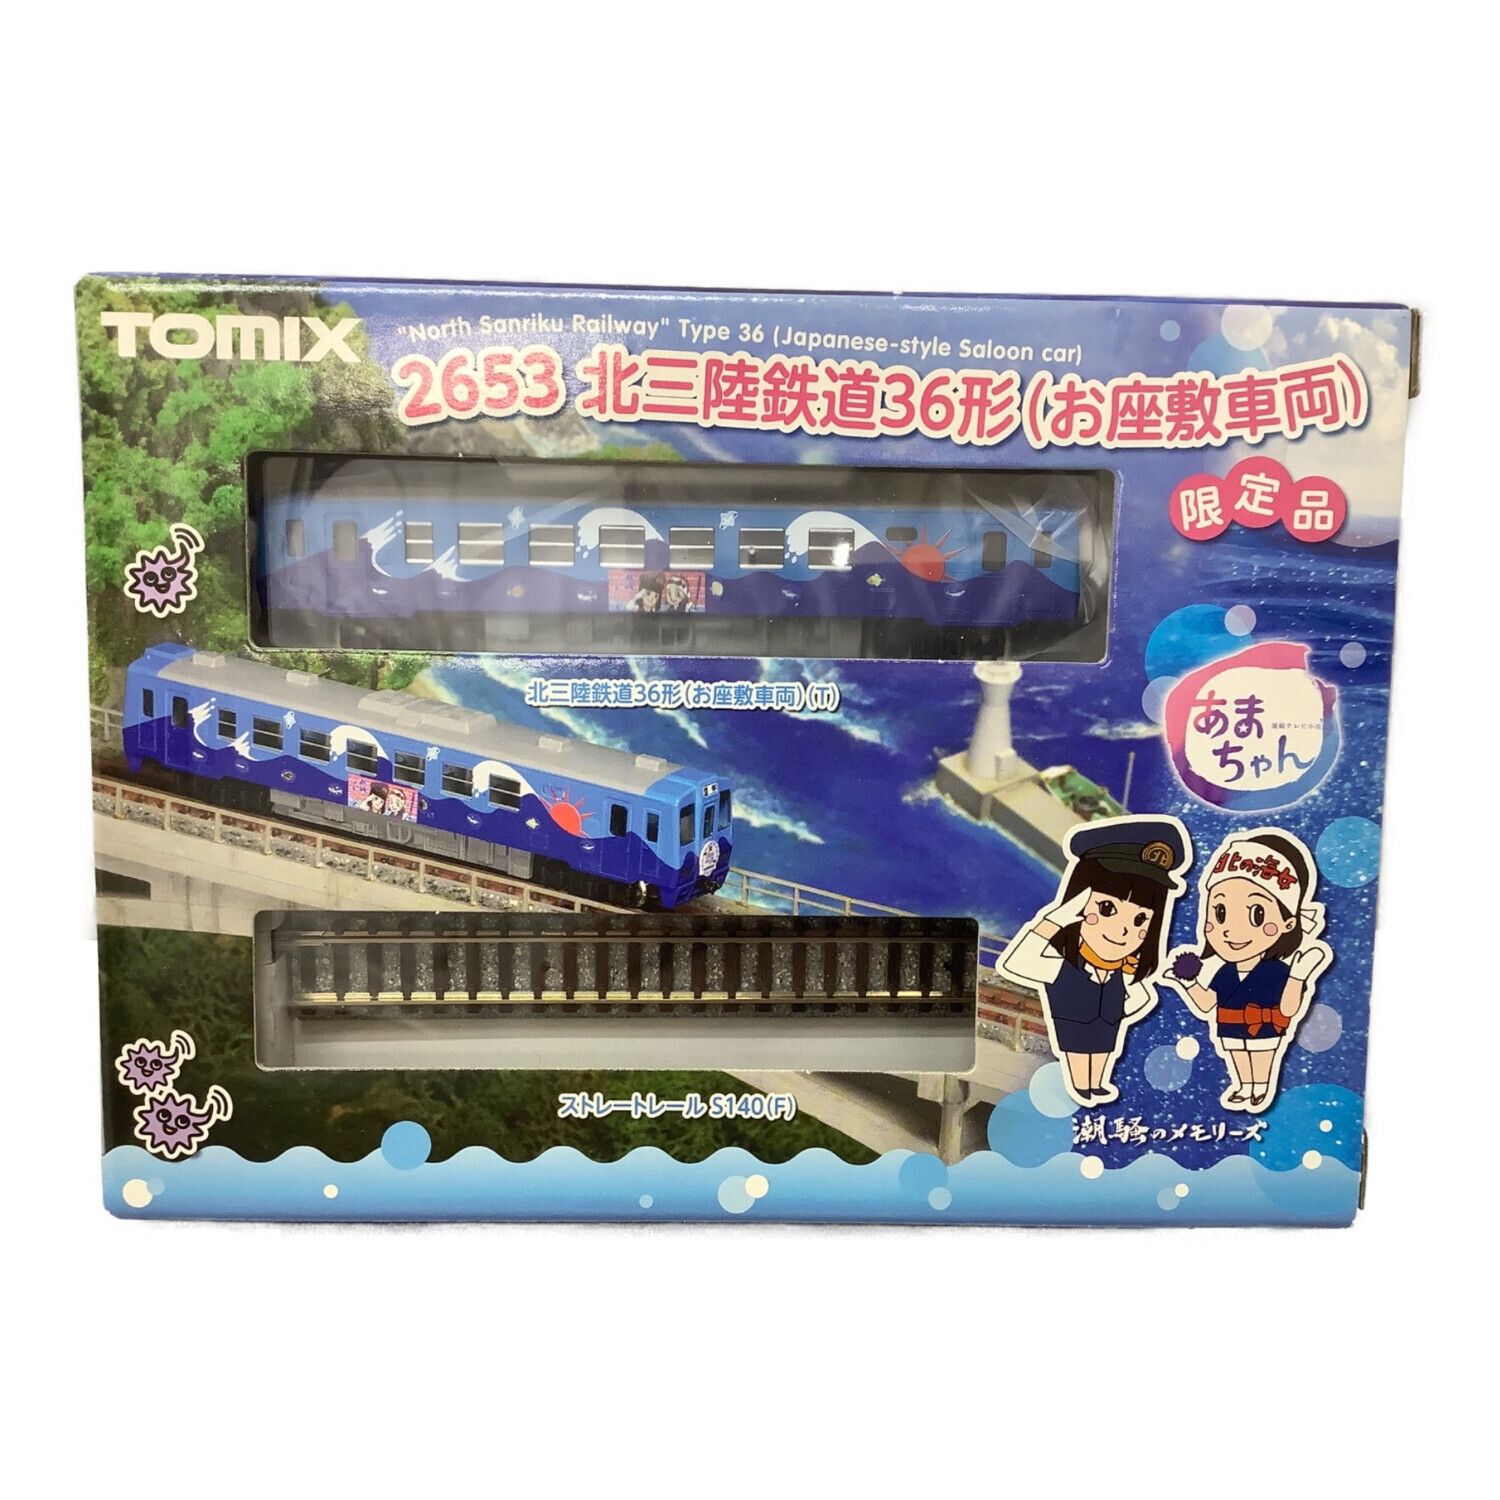 TOMIX (トミックス) Nゲージ 北三陸鉄道36形(お座敷車両) あまちゃん